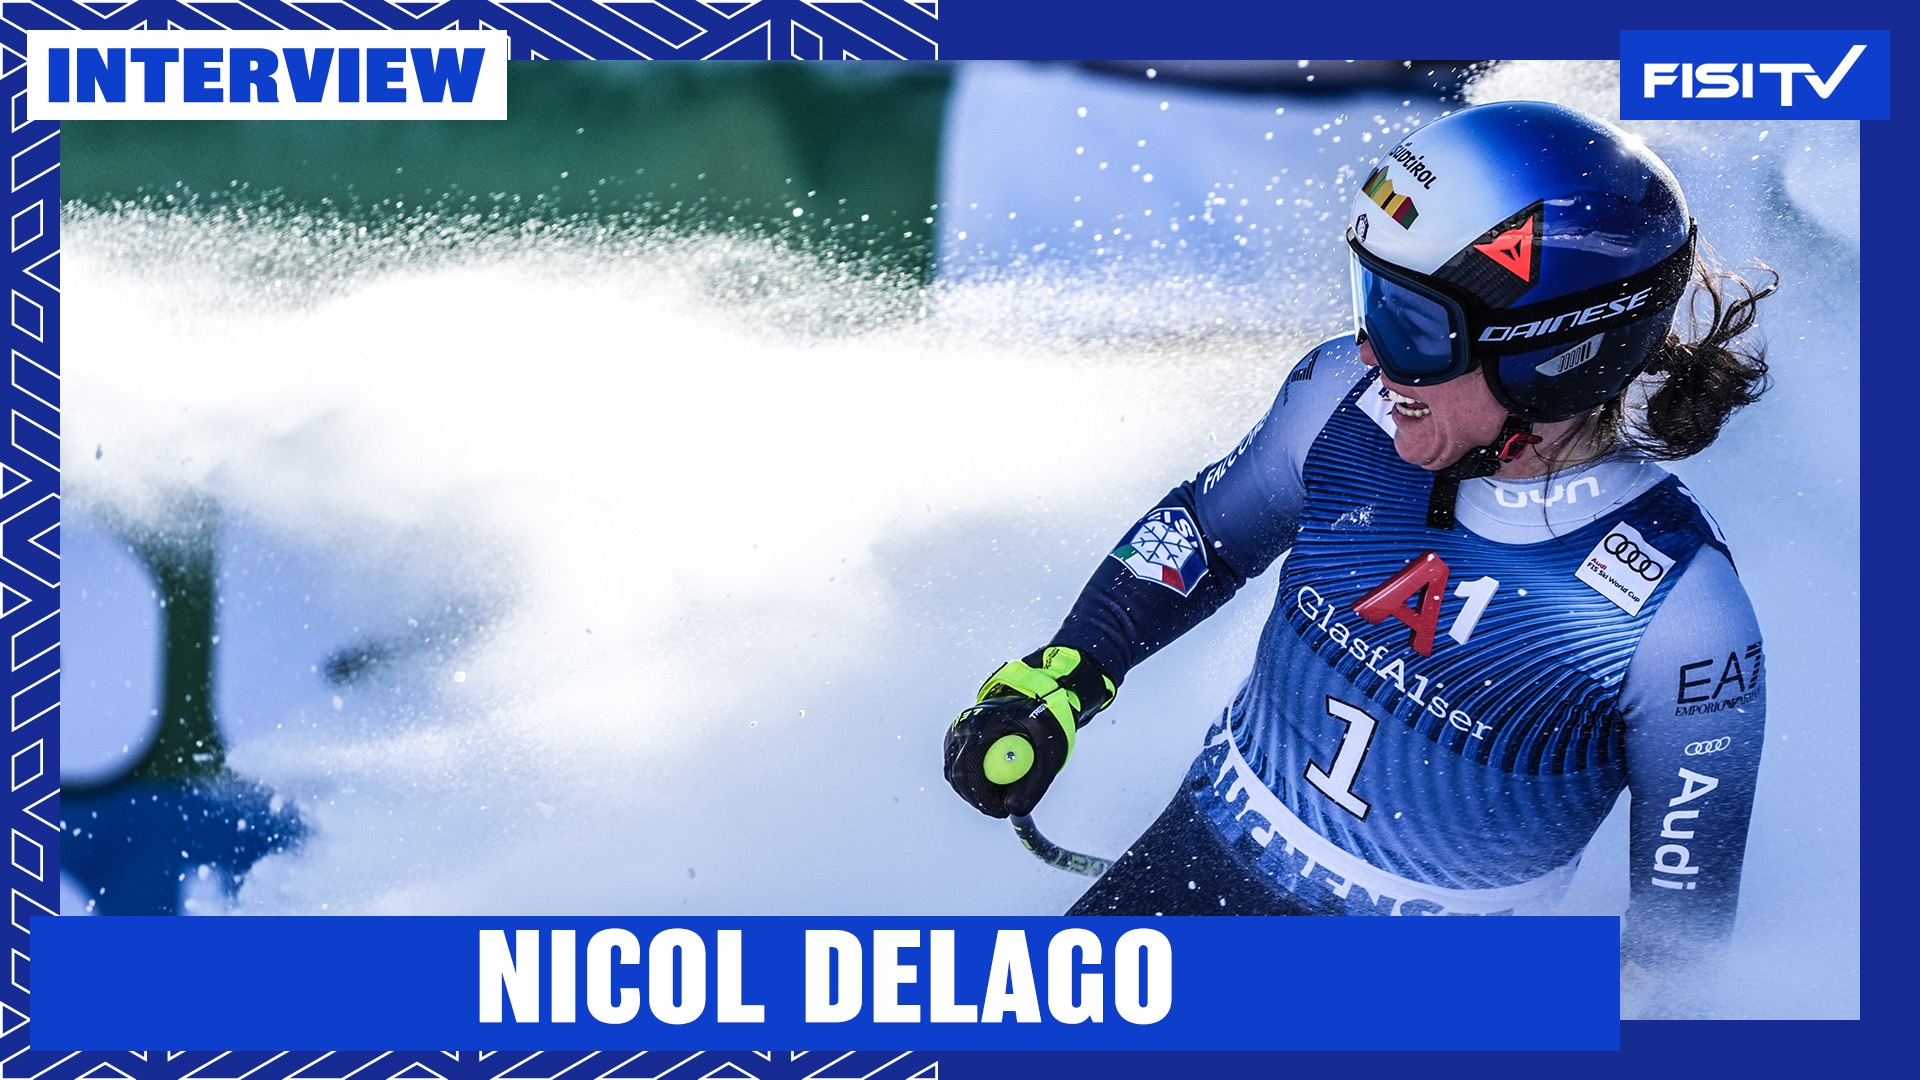 Nicol Delago | “Dedico questo podio a Elena Fanchini” | FISI TV